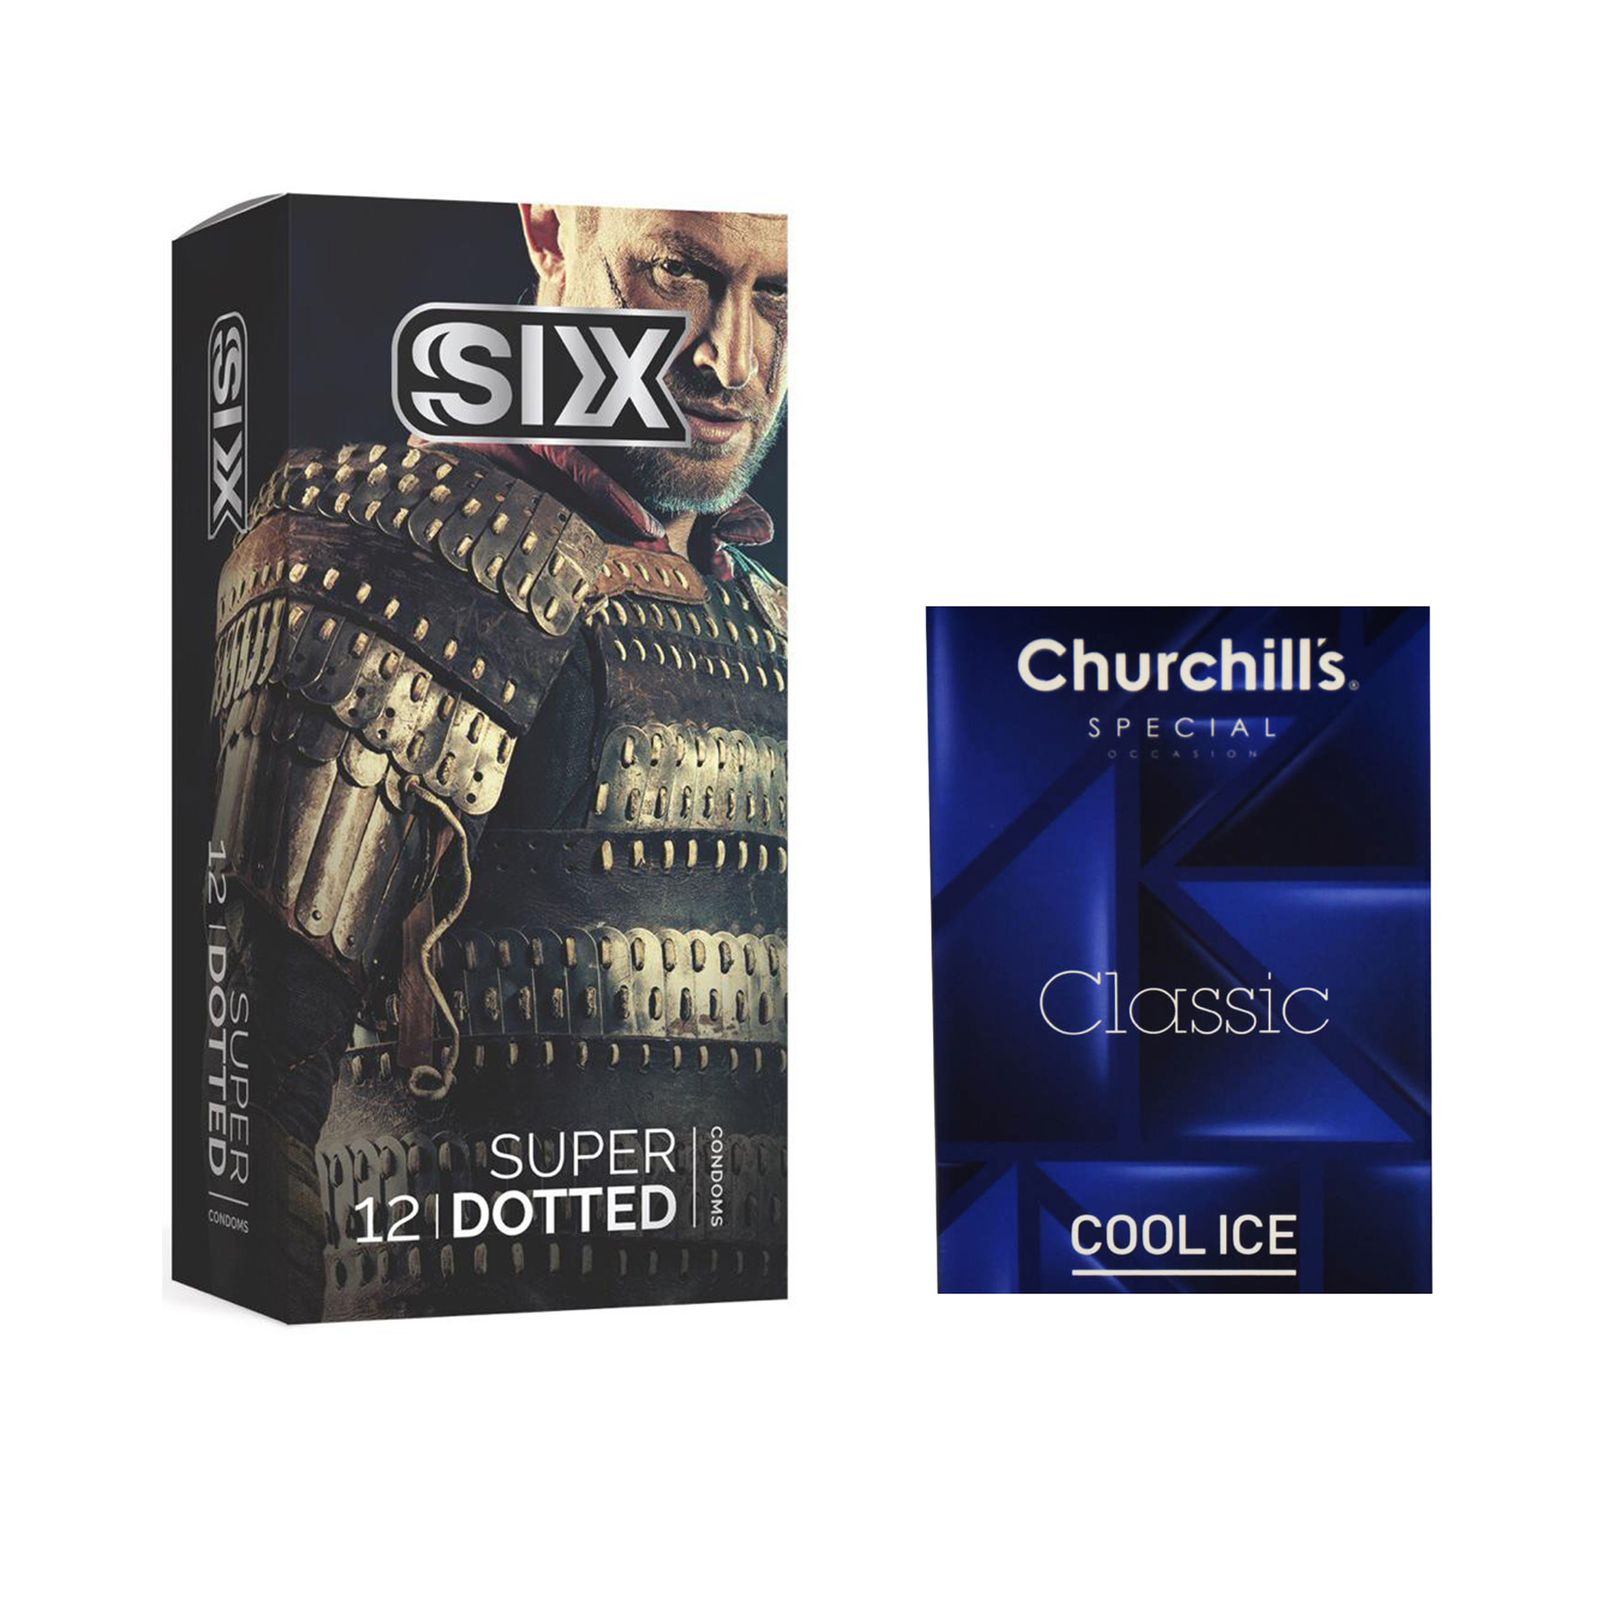 کاندوم سیکس مدل Super Dotted بسته 12 عددی به همراه کاندوم چرچیلز مدل Cool Ice بسته 3 عددی -  - 2